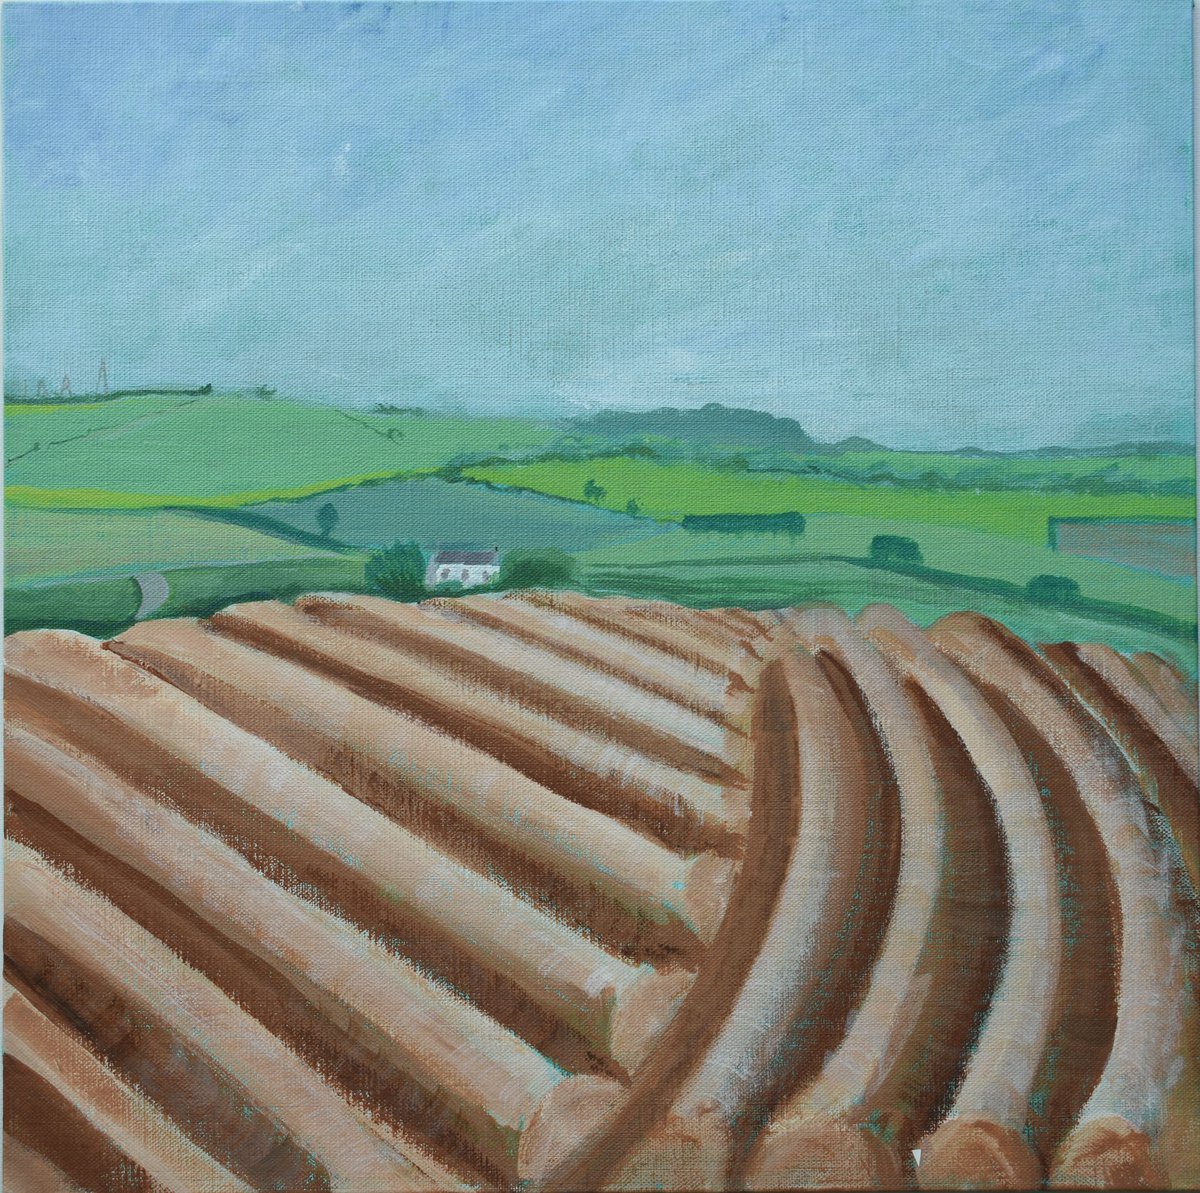 Potato Field by Alison Deegan